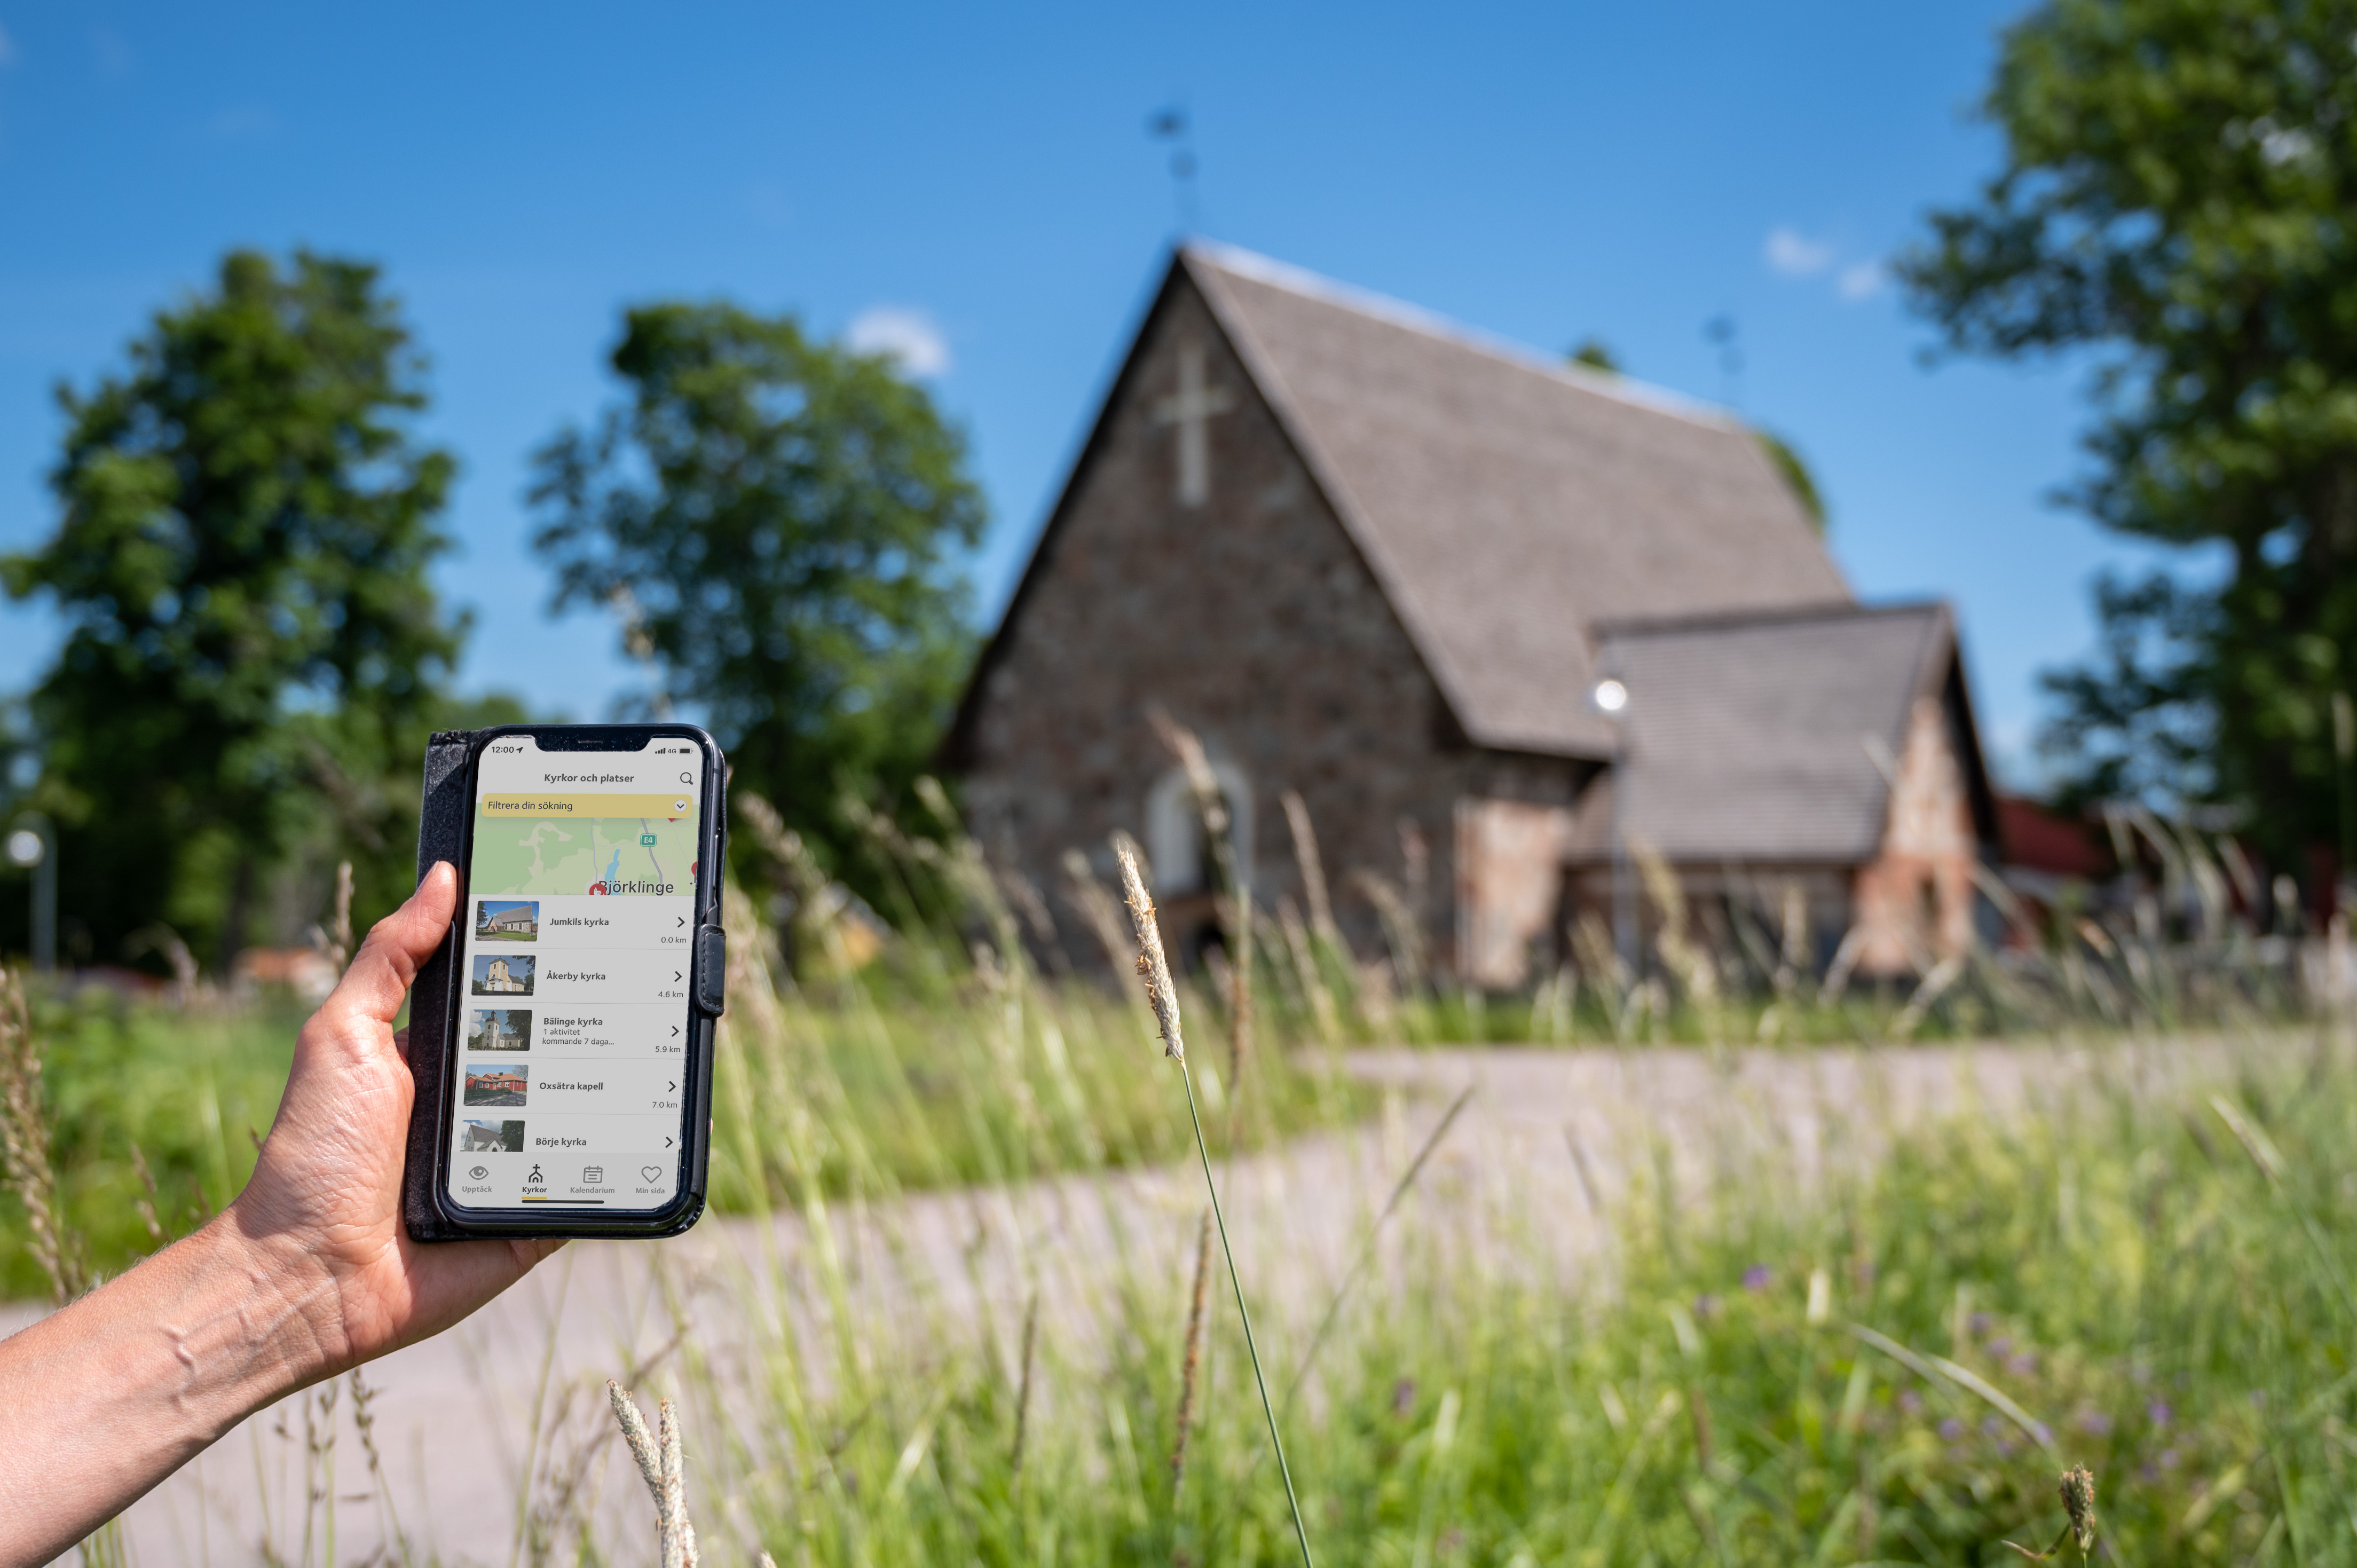 En person som kommit fram till en gammal kyrka håller en mobiltelefon i handen. På skärmen visas information om kyrkan.